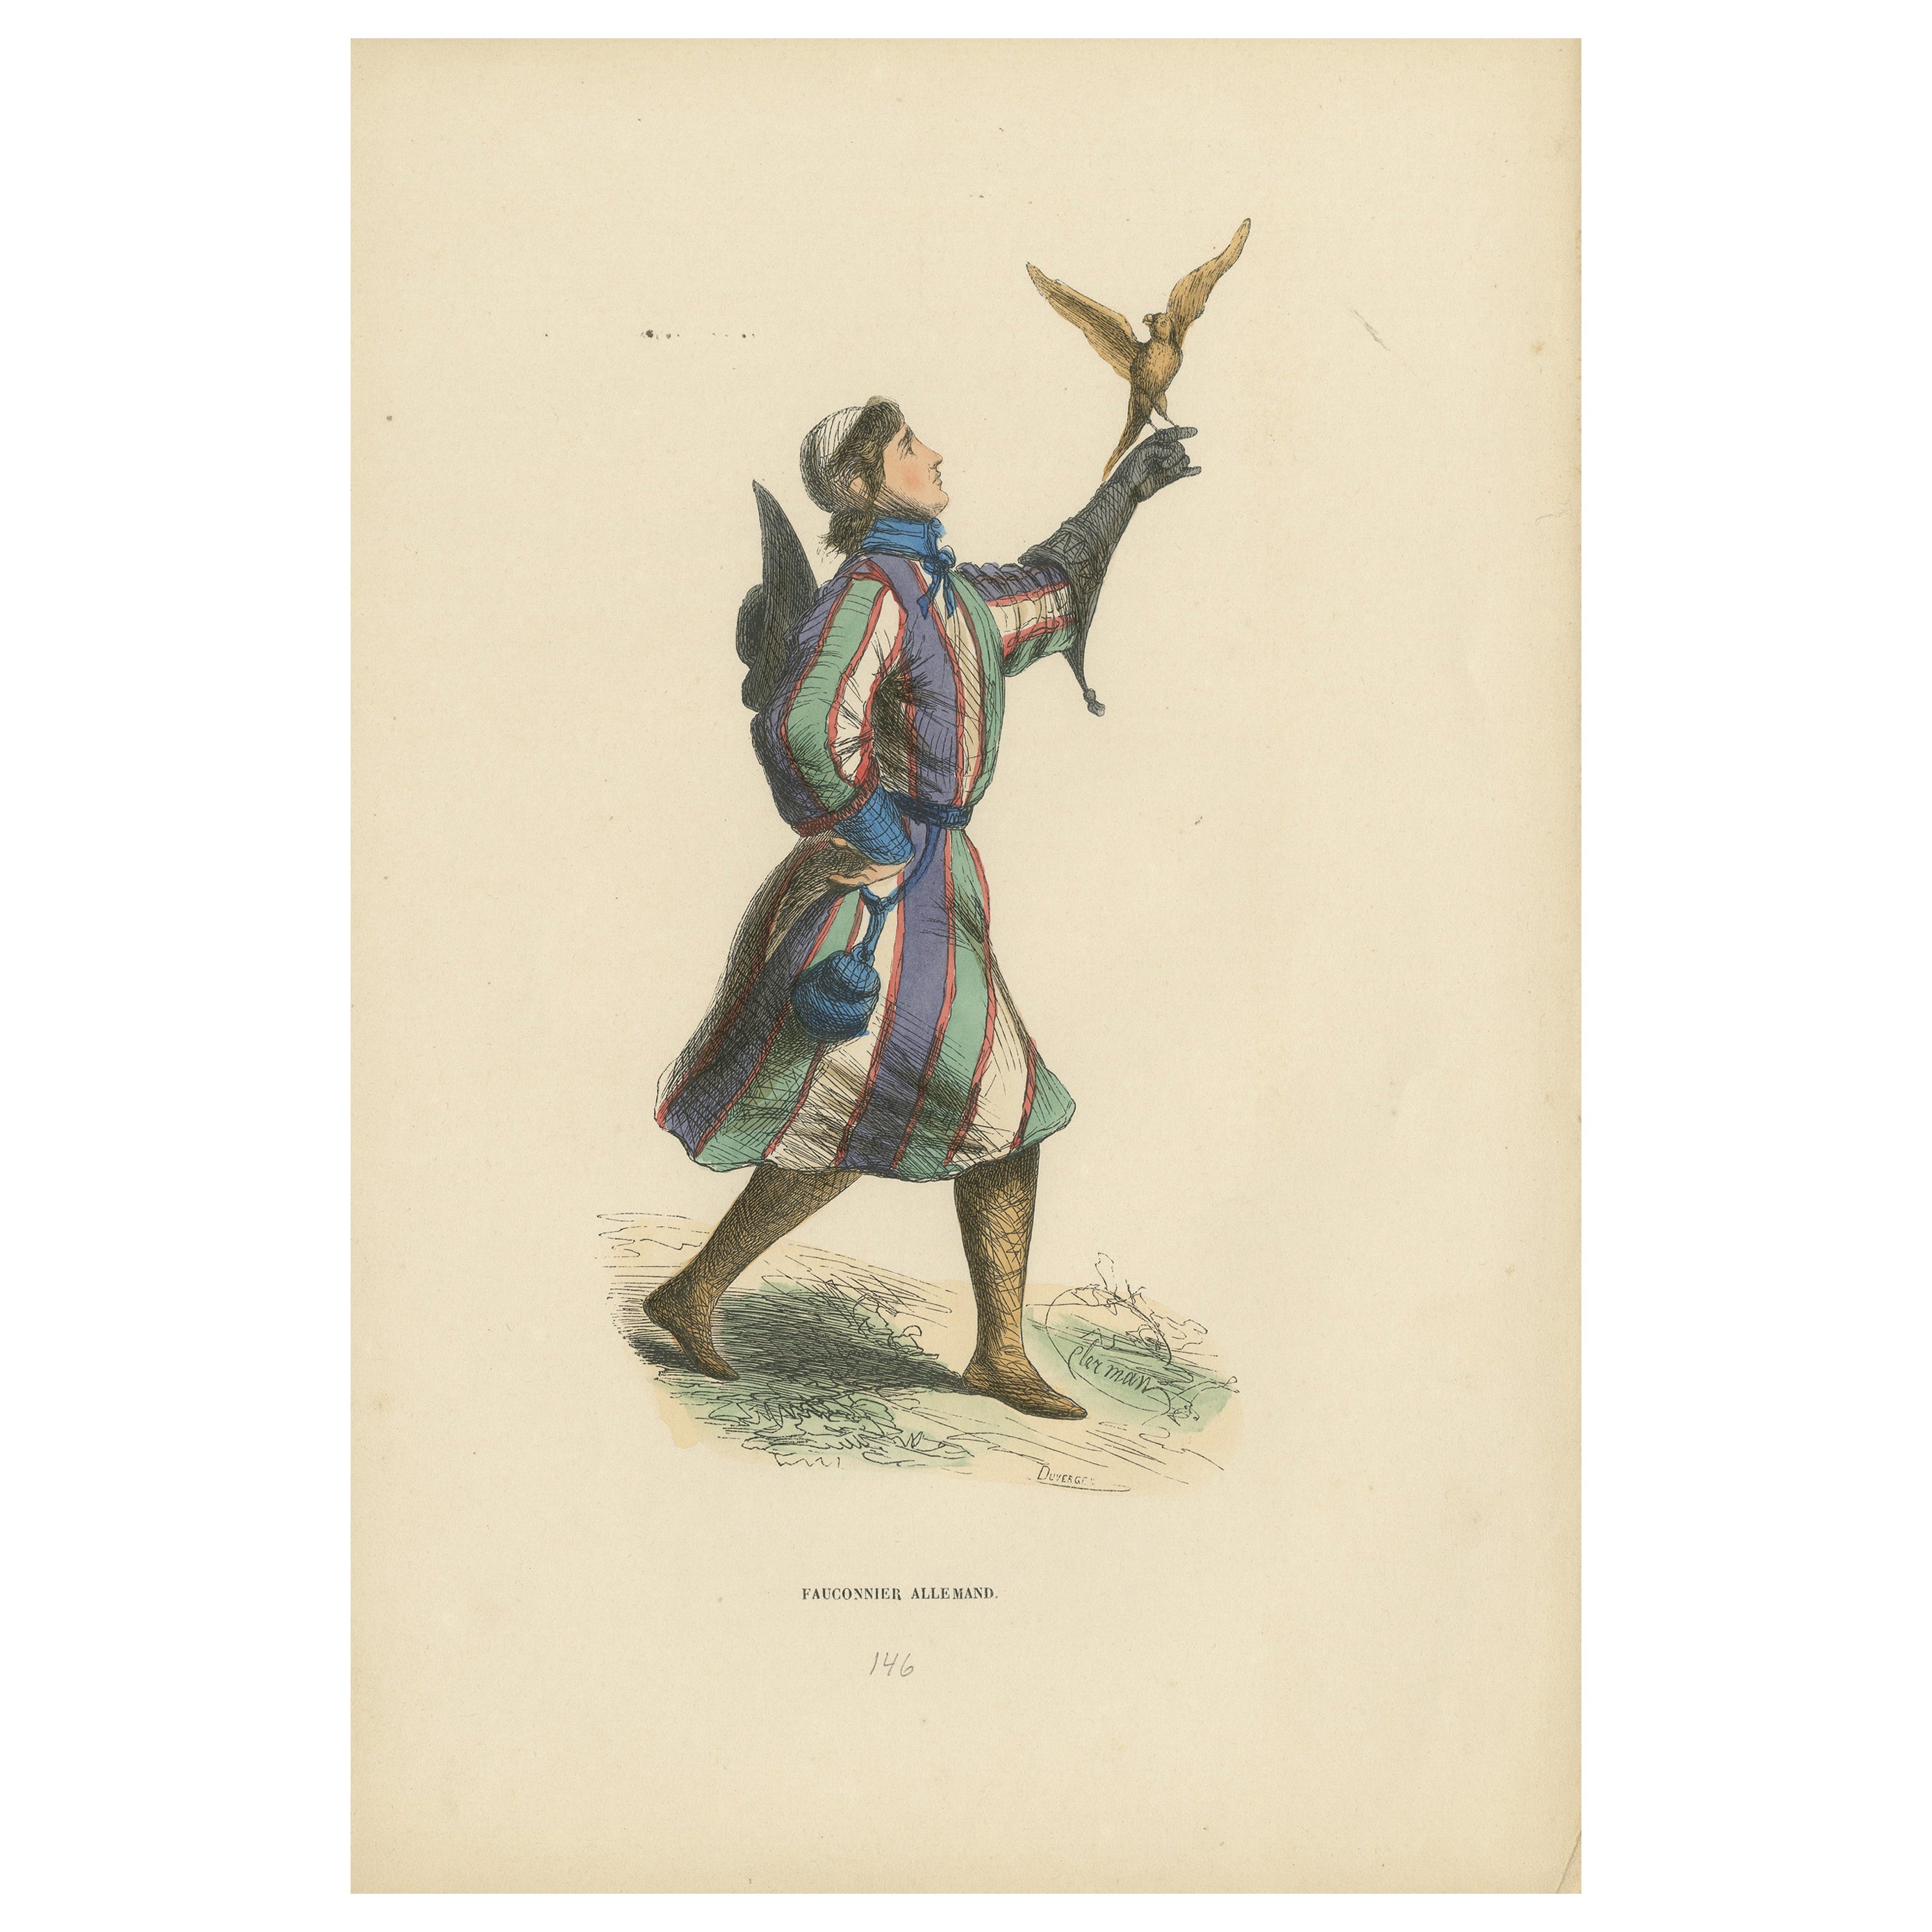 The Noble Sport : Un fauconnier allemand dans le "Costume du Moyen Âge", 1847